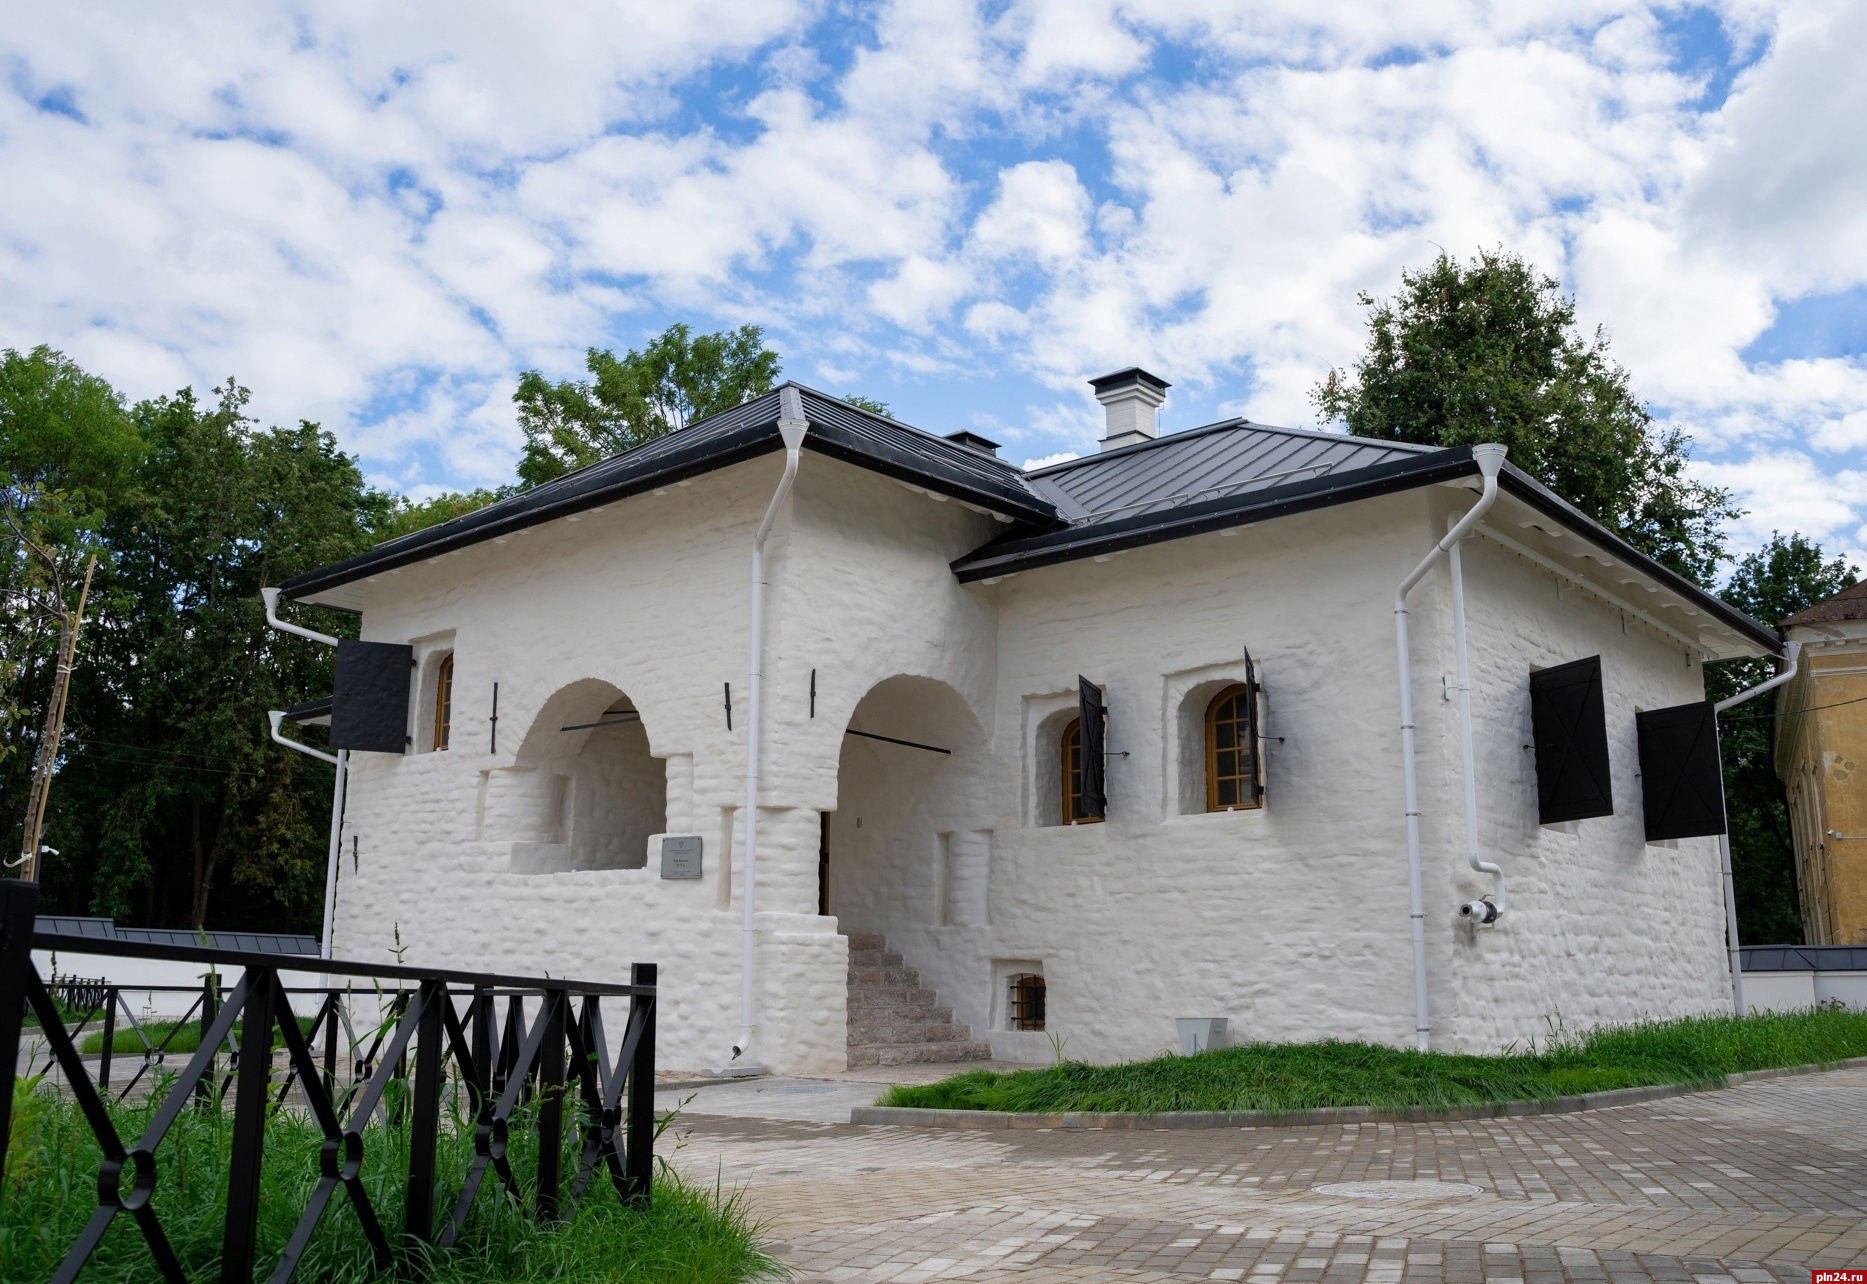 Бесплатные экскурсии организует Псковский музей-заповедник в День туризма